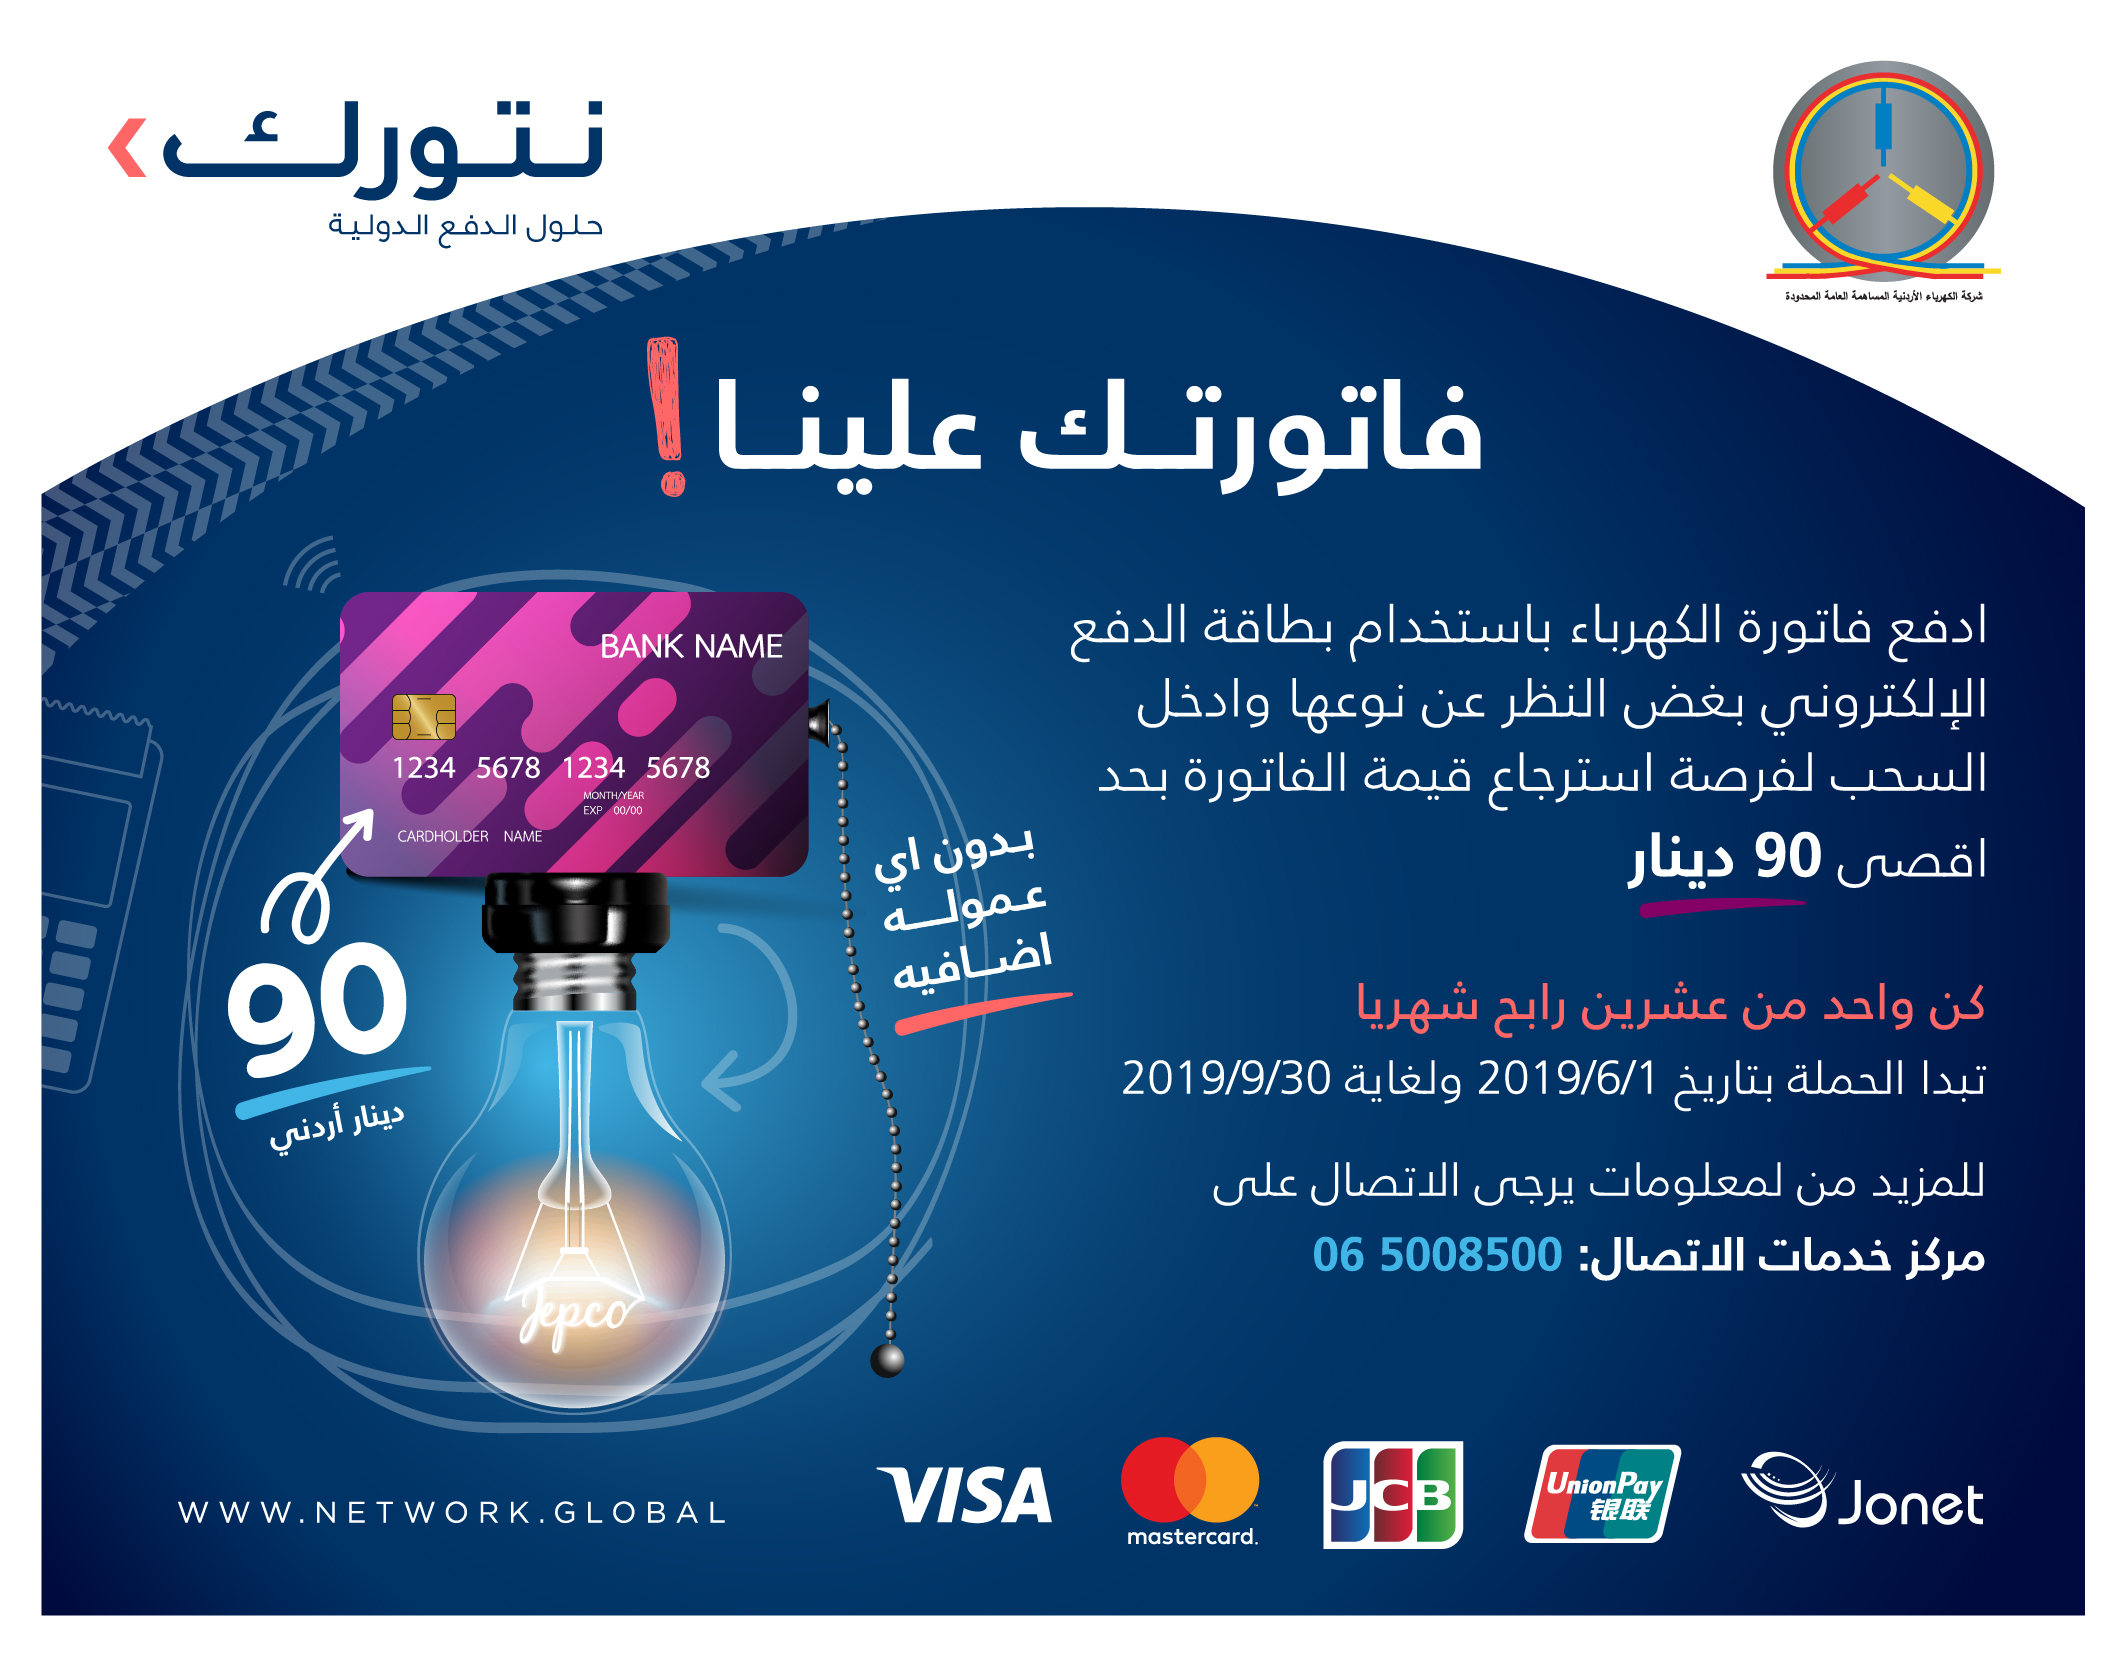 نتورك إنترناشيونال تطلق حملة الدفع الإلكتروني بالشراكة مع شركة الكهرباء الأردنية